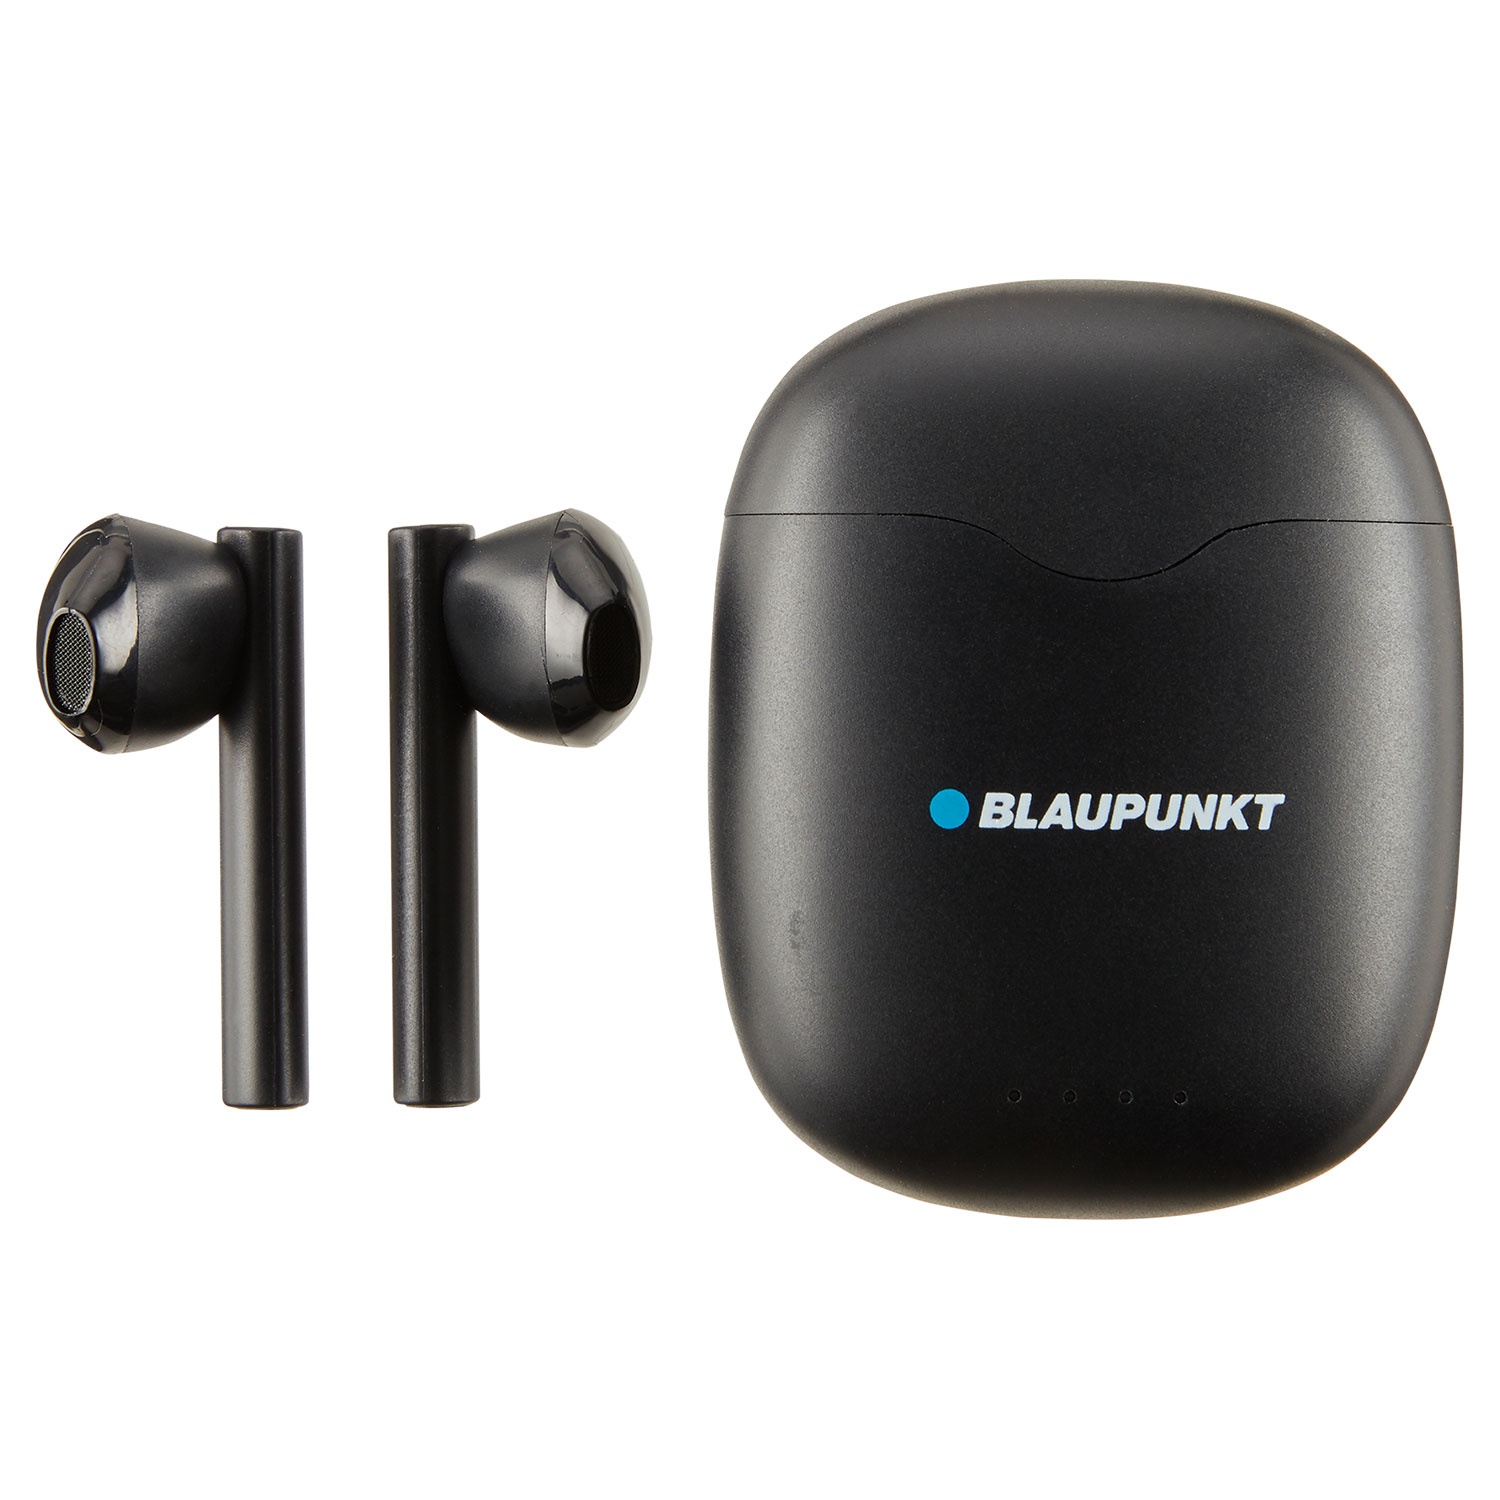 BLAUPUNKT® True Wireless In-Ear-Kopfhörer TWS 15